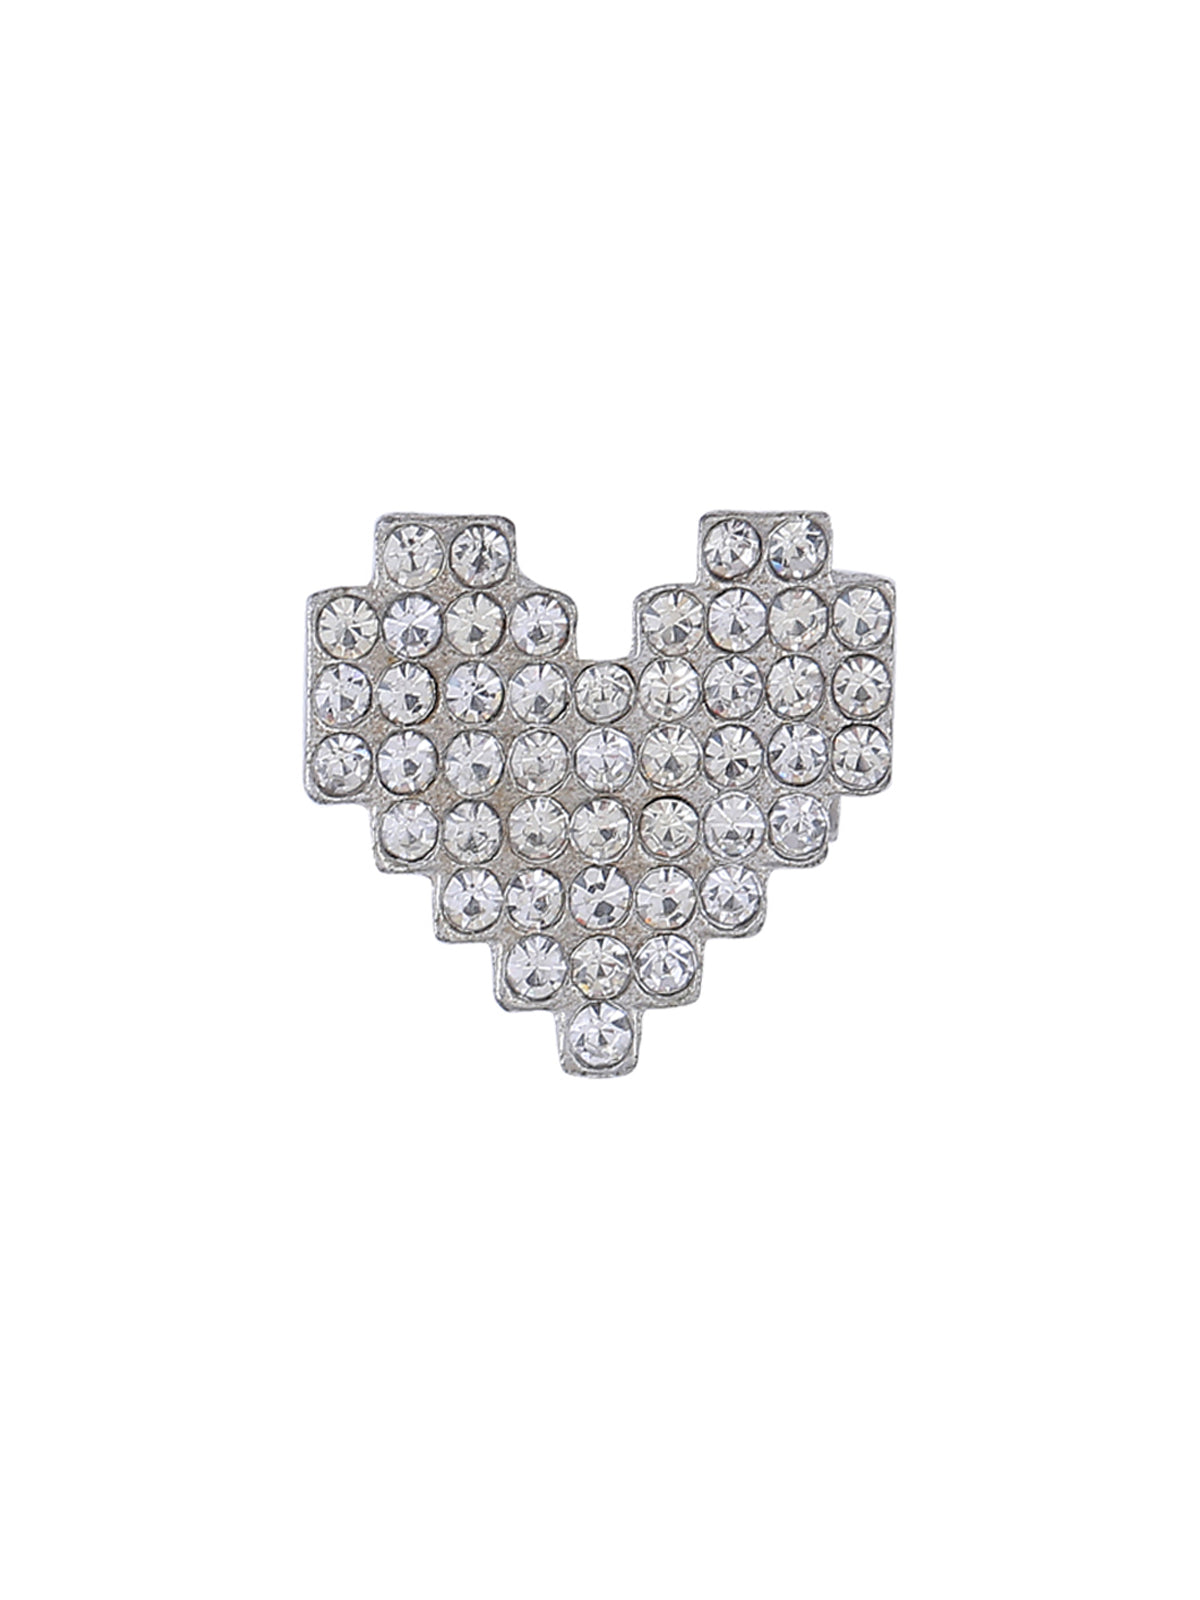 Heart Shape Silver Diamond Brooch Pin